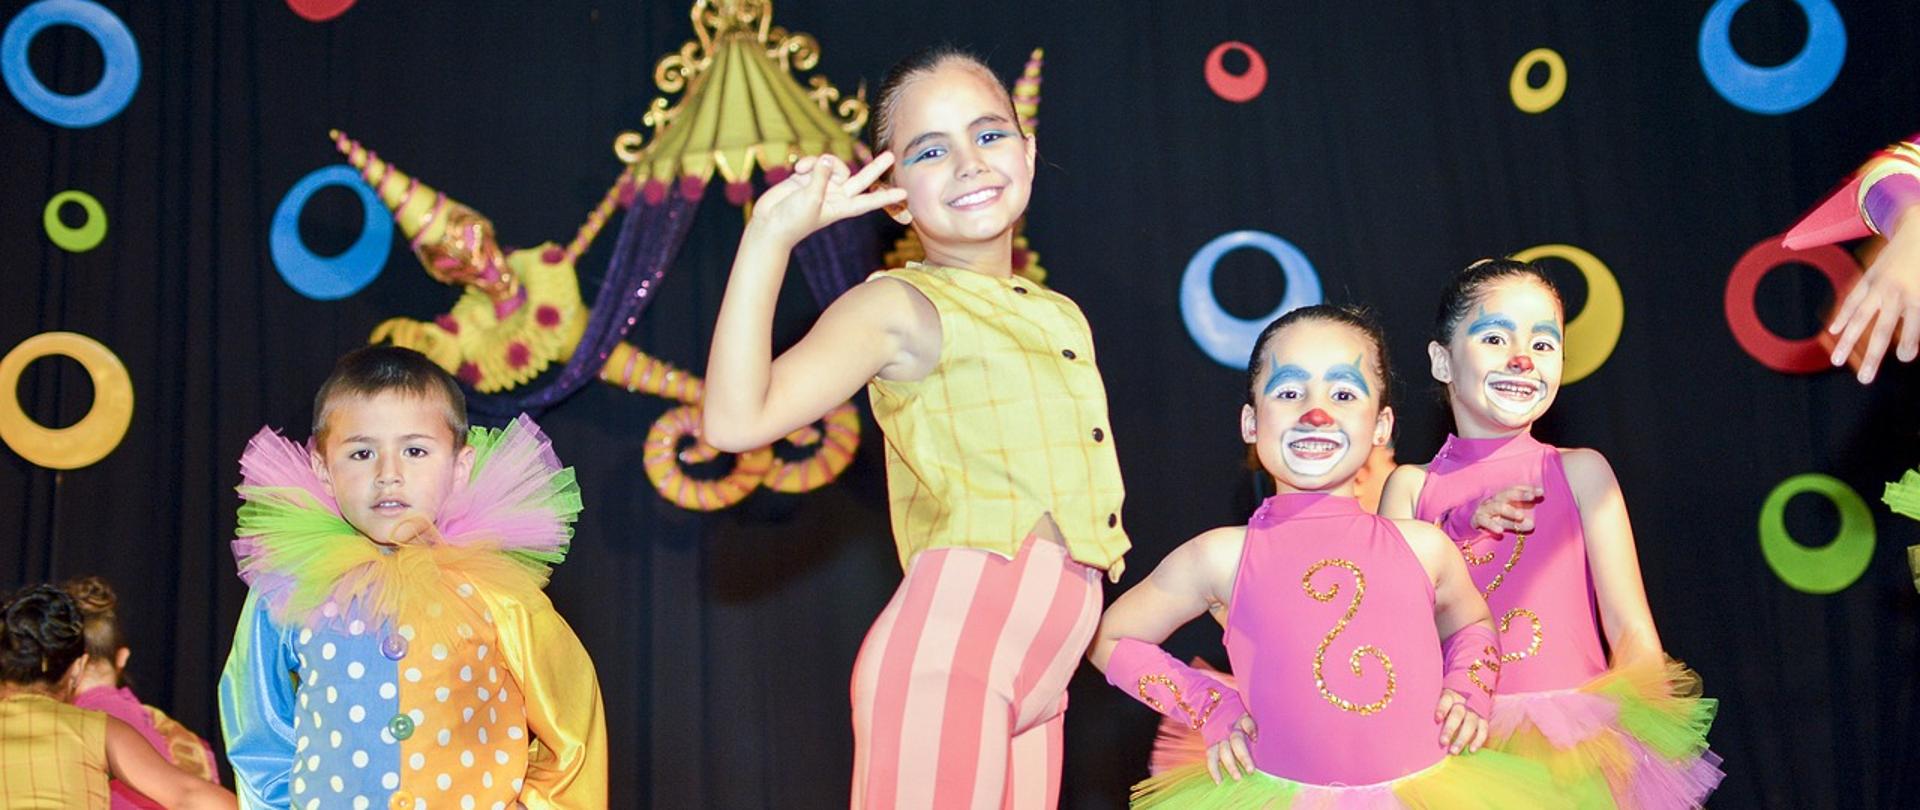 Kolorowe zdjęcie dzieci podczas występu teatralnego w kostiumach